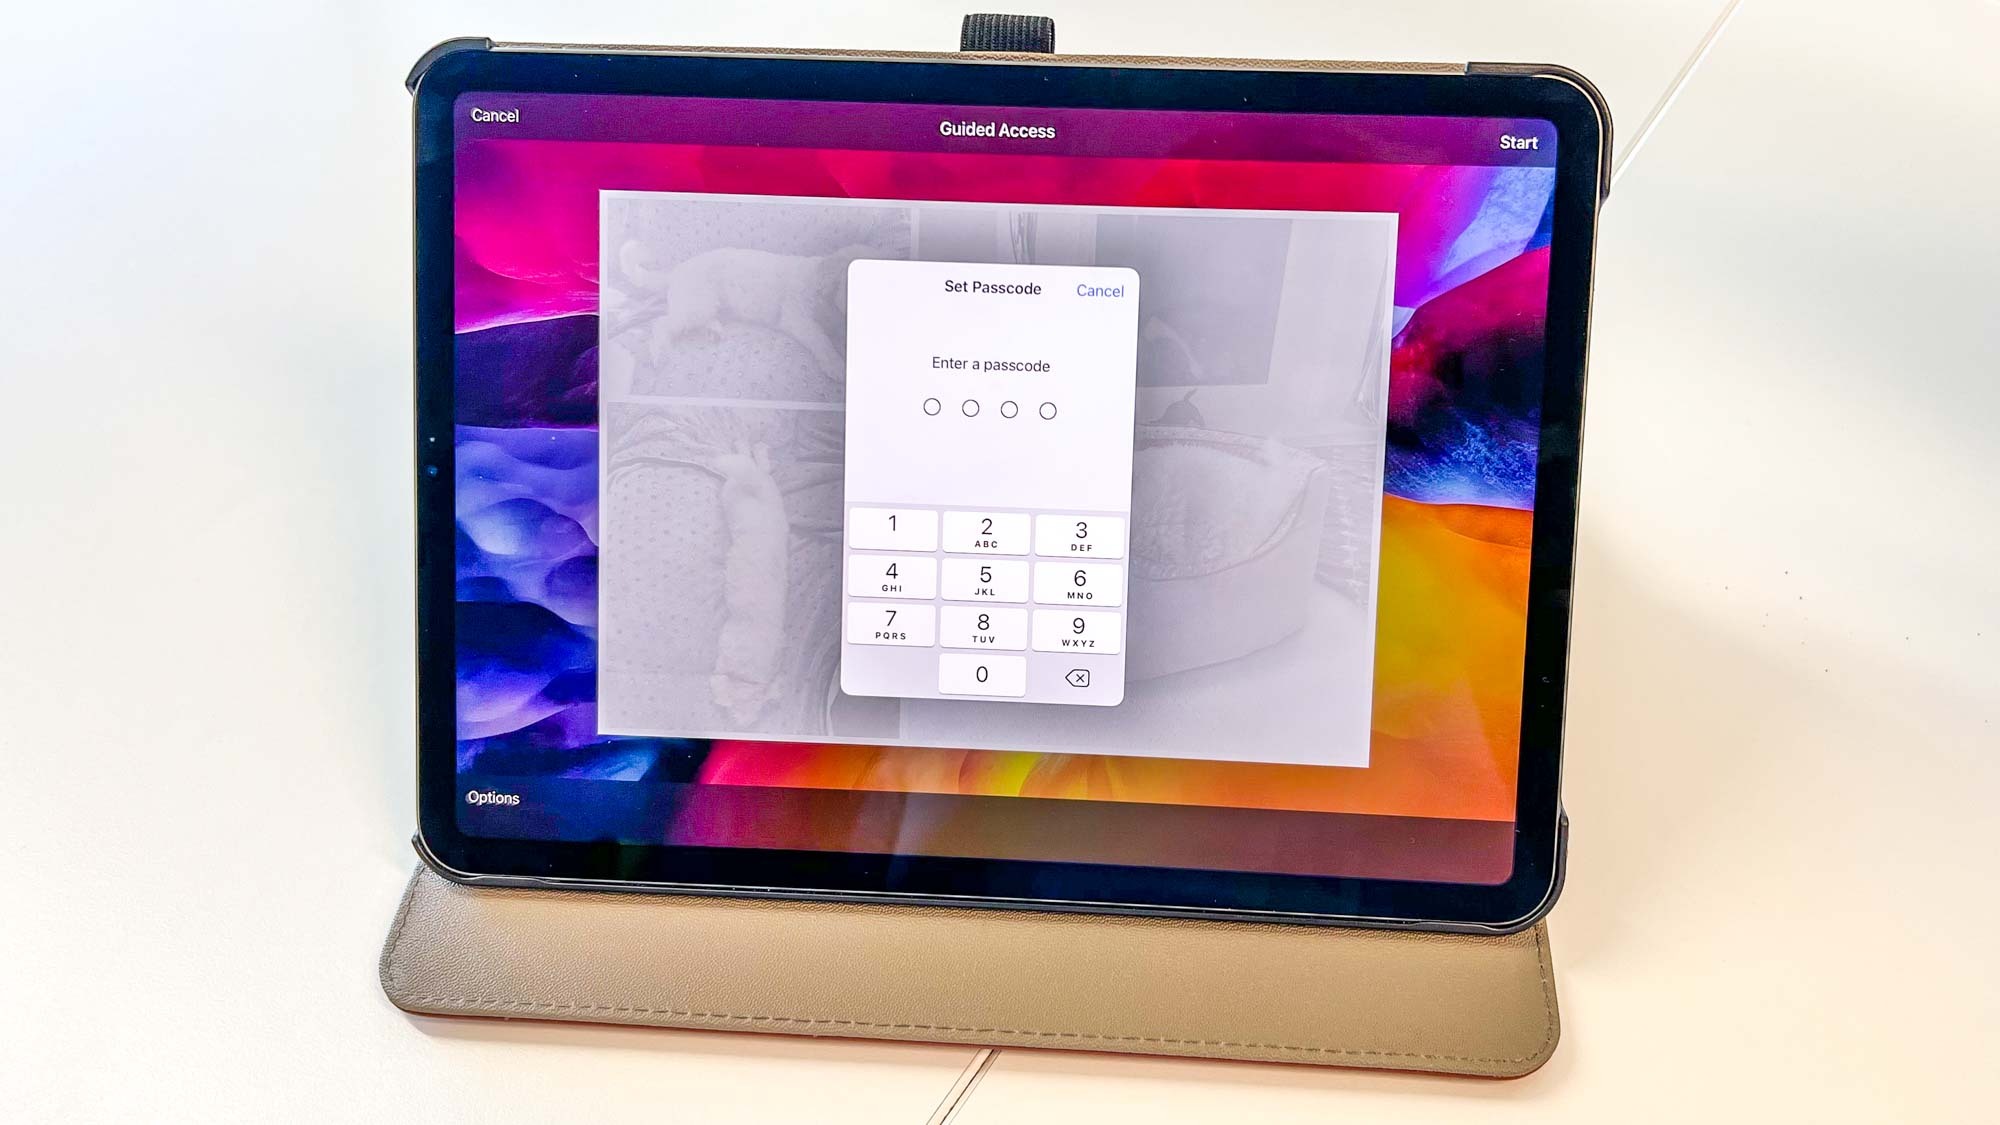 Фотография iPad, показывающая запрос PIN-кода при активации или выходе из режима управляемого доступа.